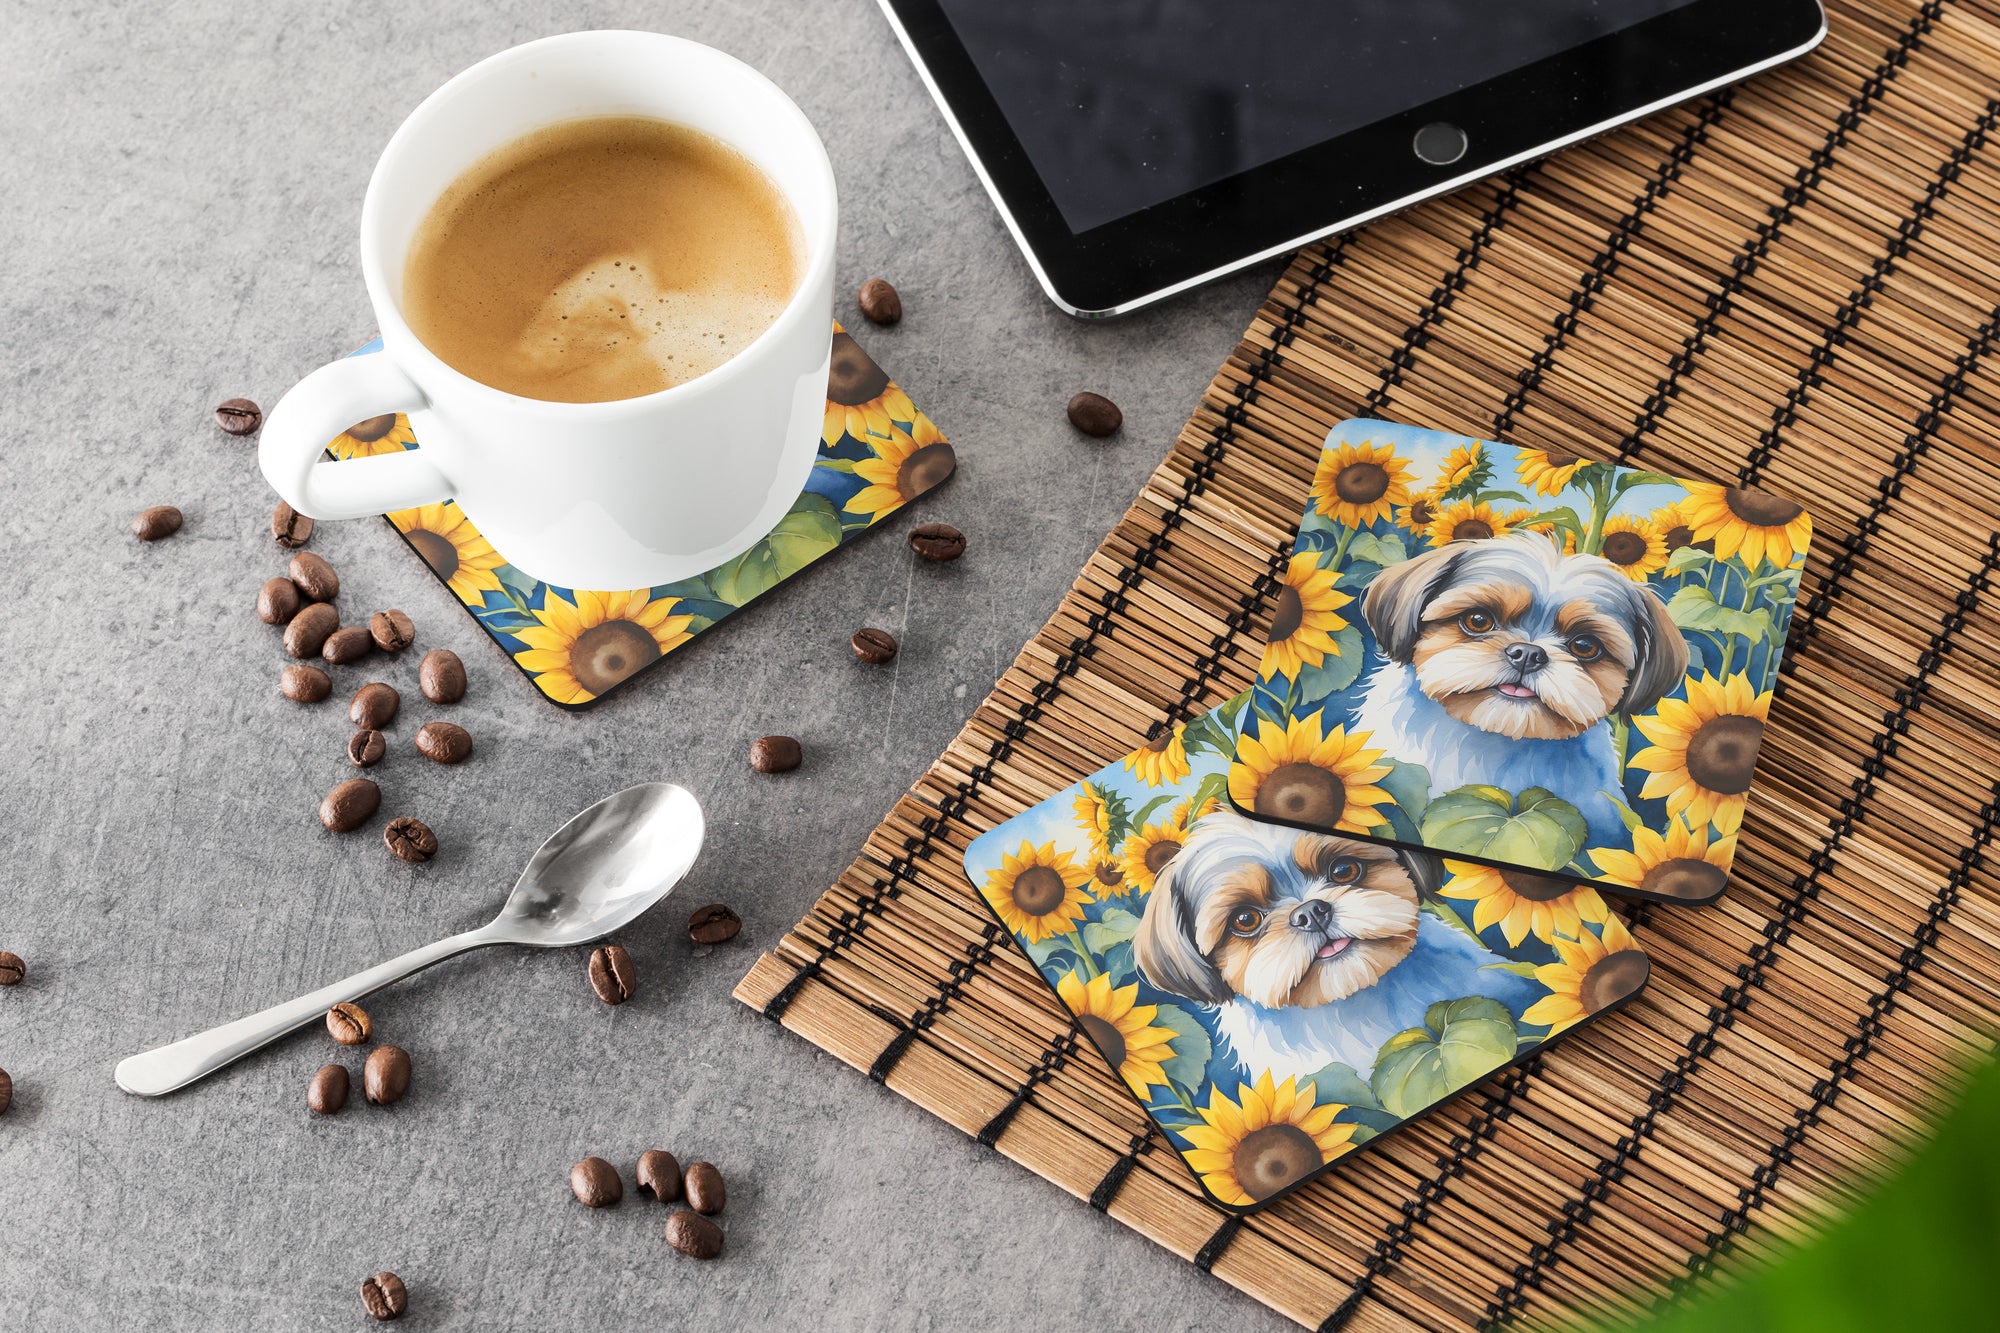 Shih Tzu in Sunflowers Foam Coasters